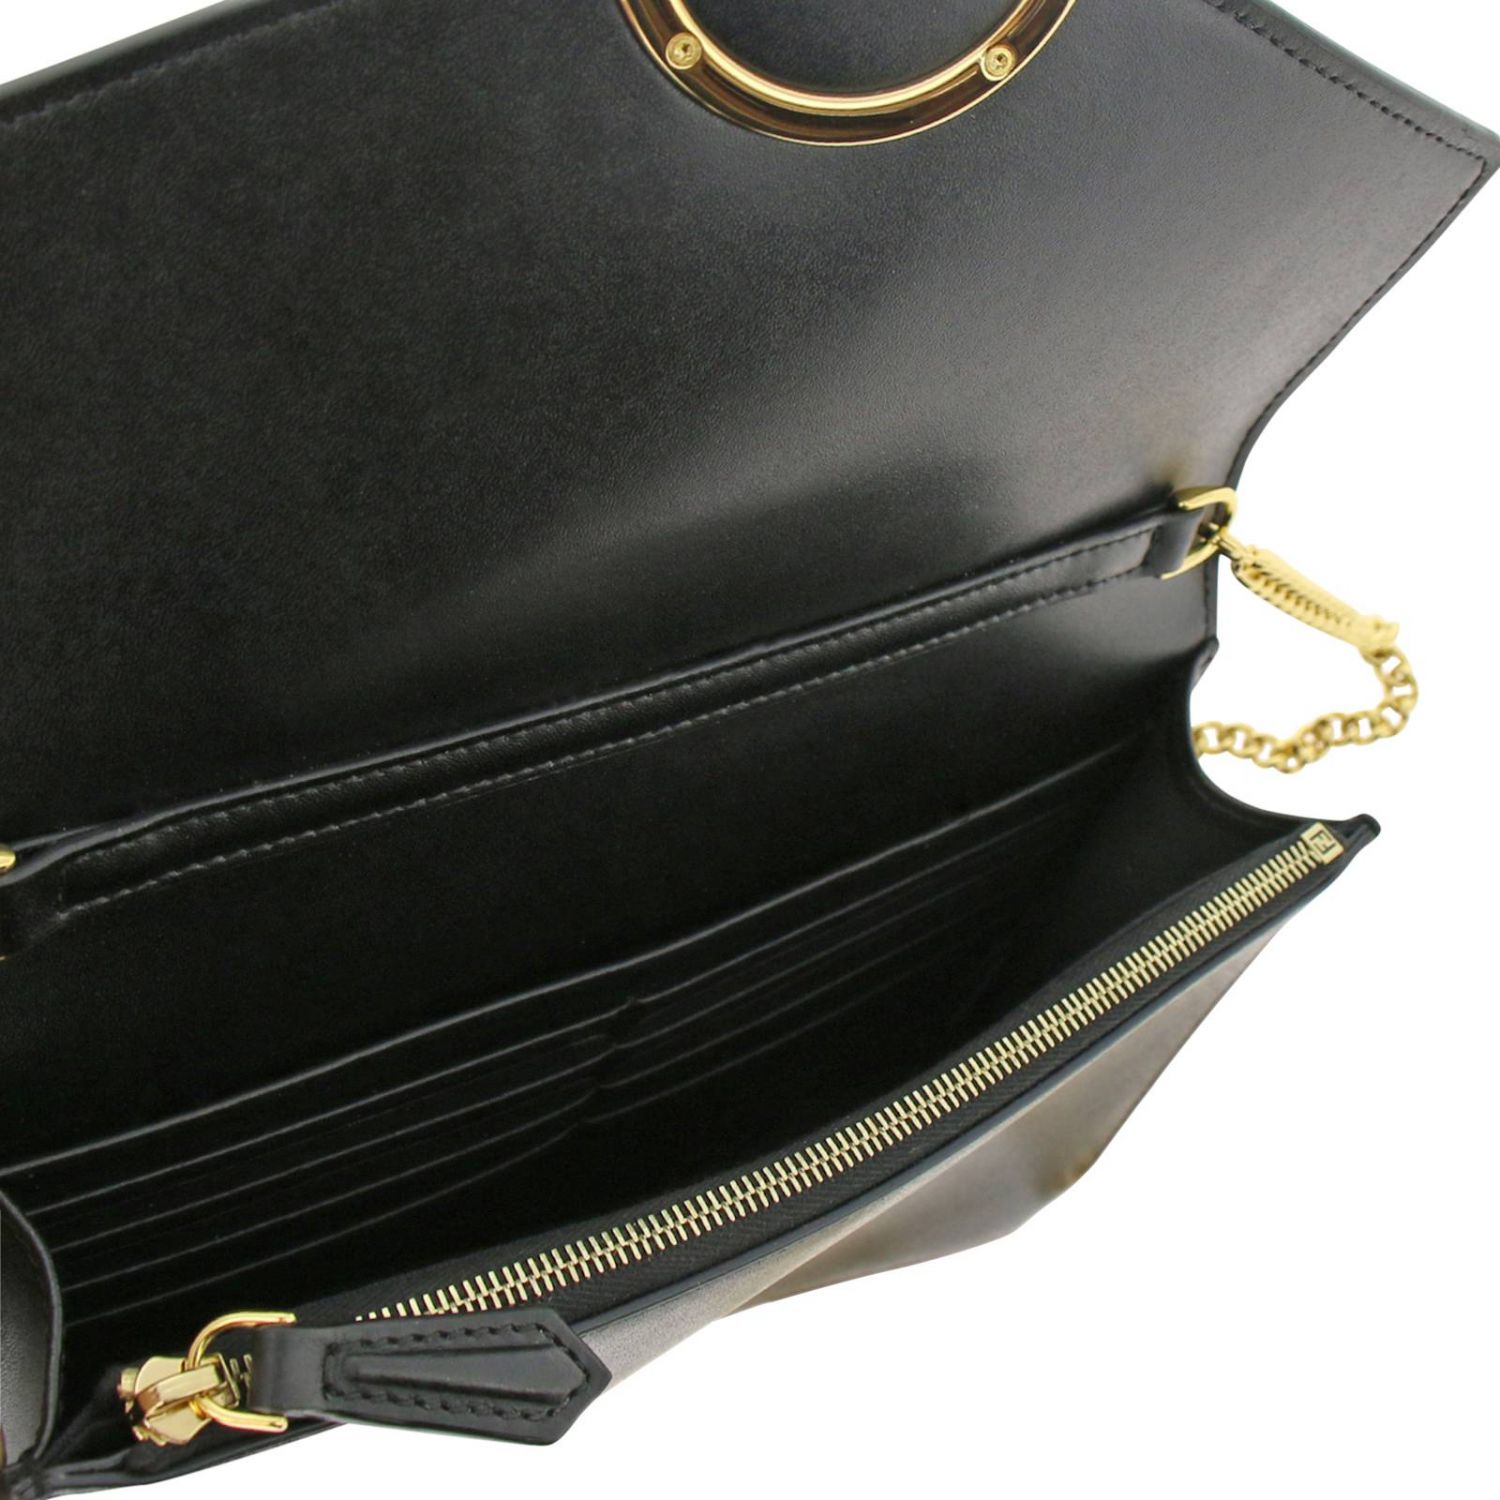 FENDI: Mini bag women | Mini Bag Fendi Women Black | Mini Bag Fendi ...